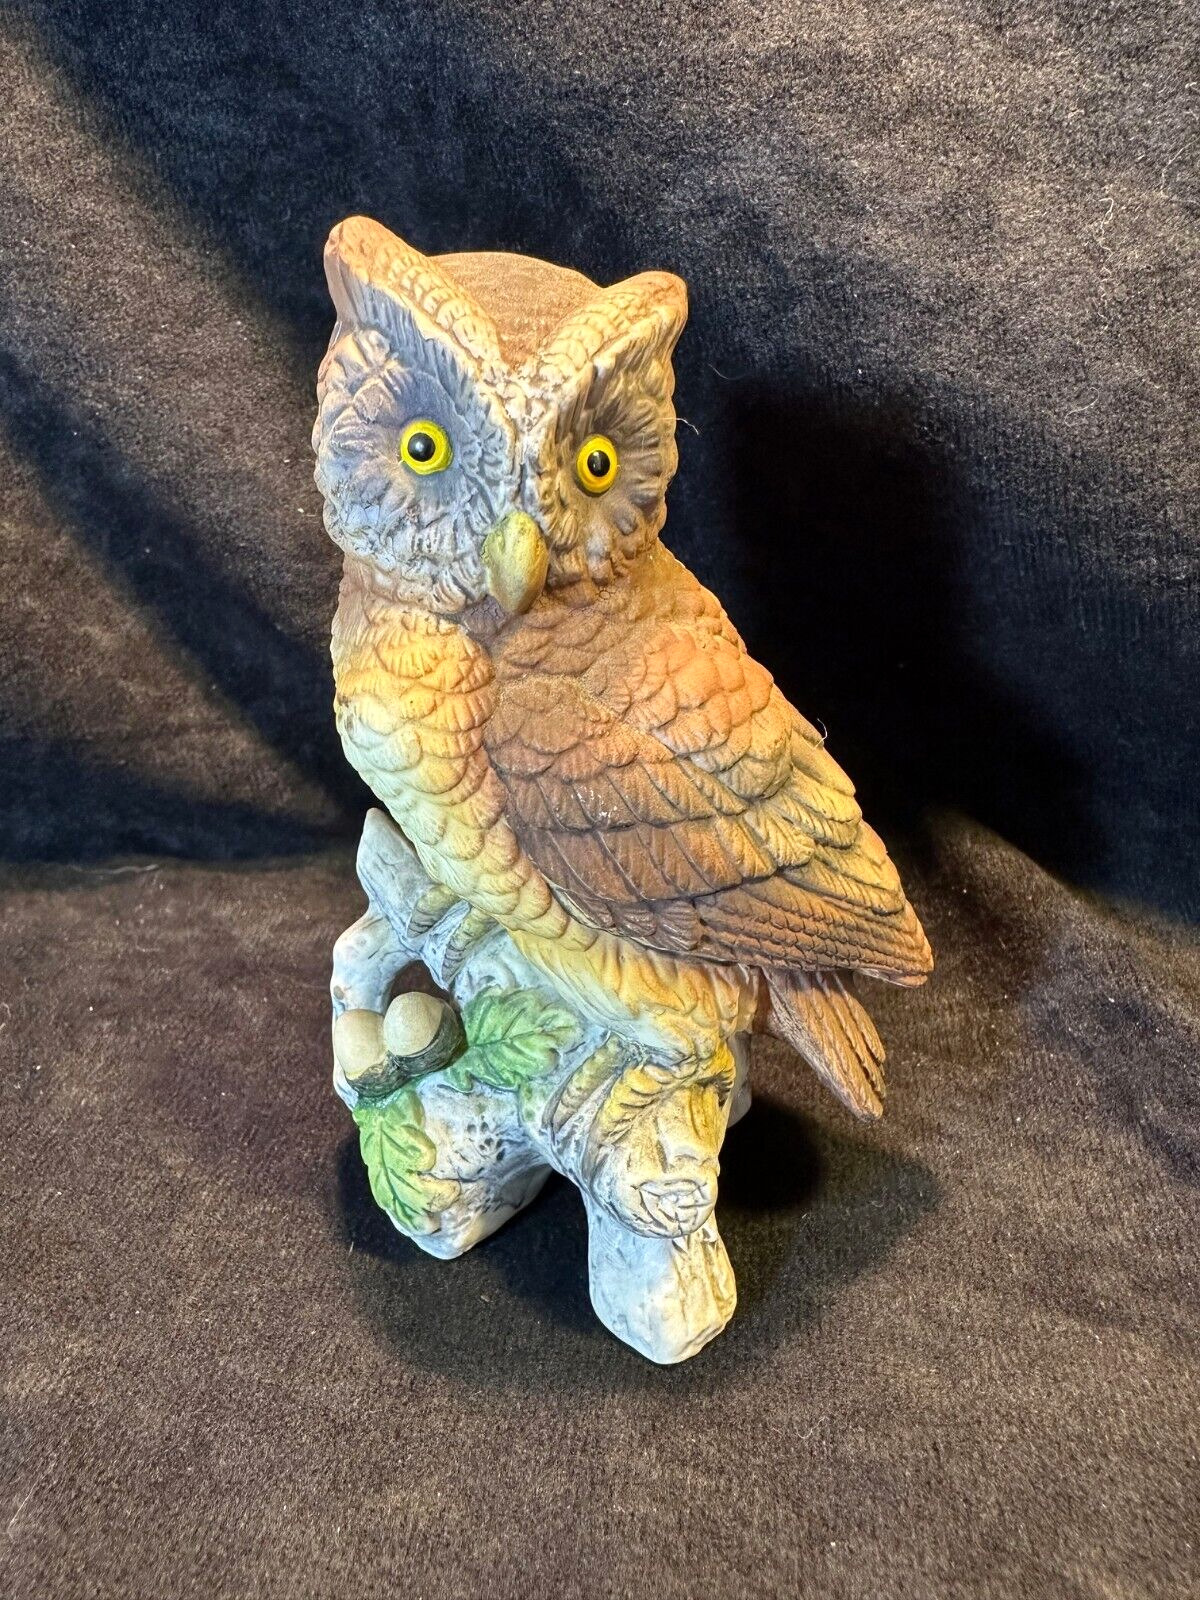 Vintage Lefton Porcelain Great Horned Owl Figurine KW121 Japan